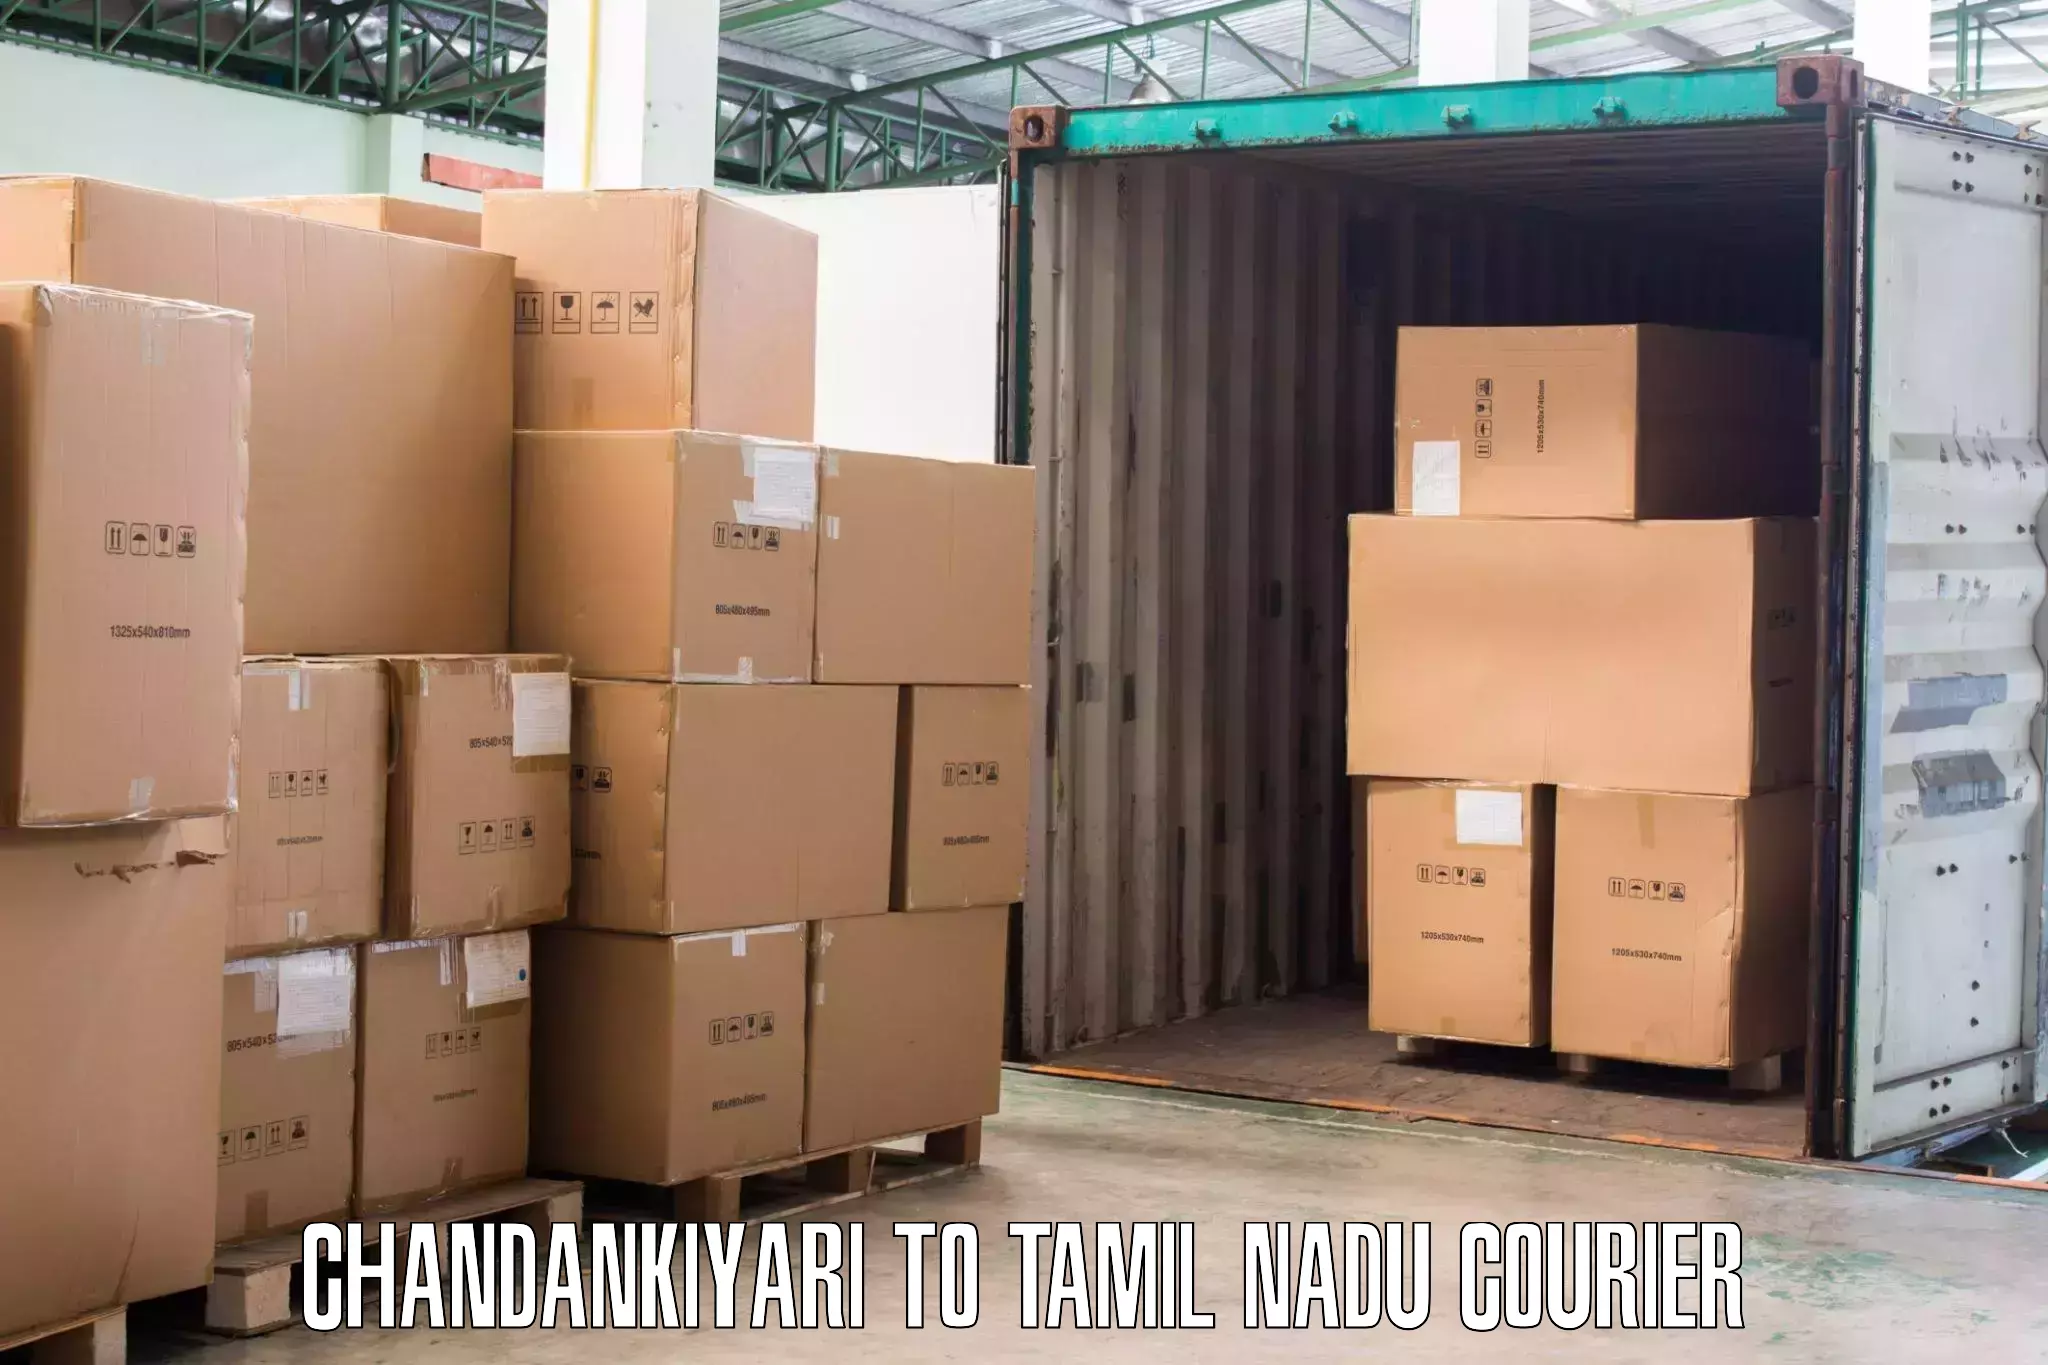 Efficient home goods movers Chandankiyari to Vriddhachalam